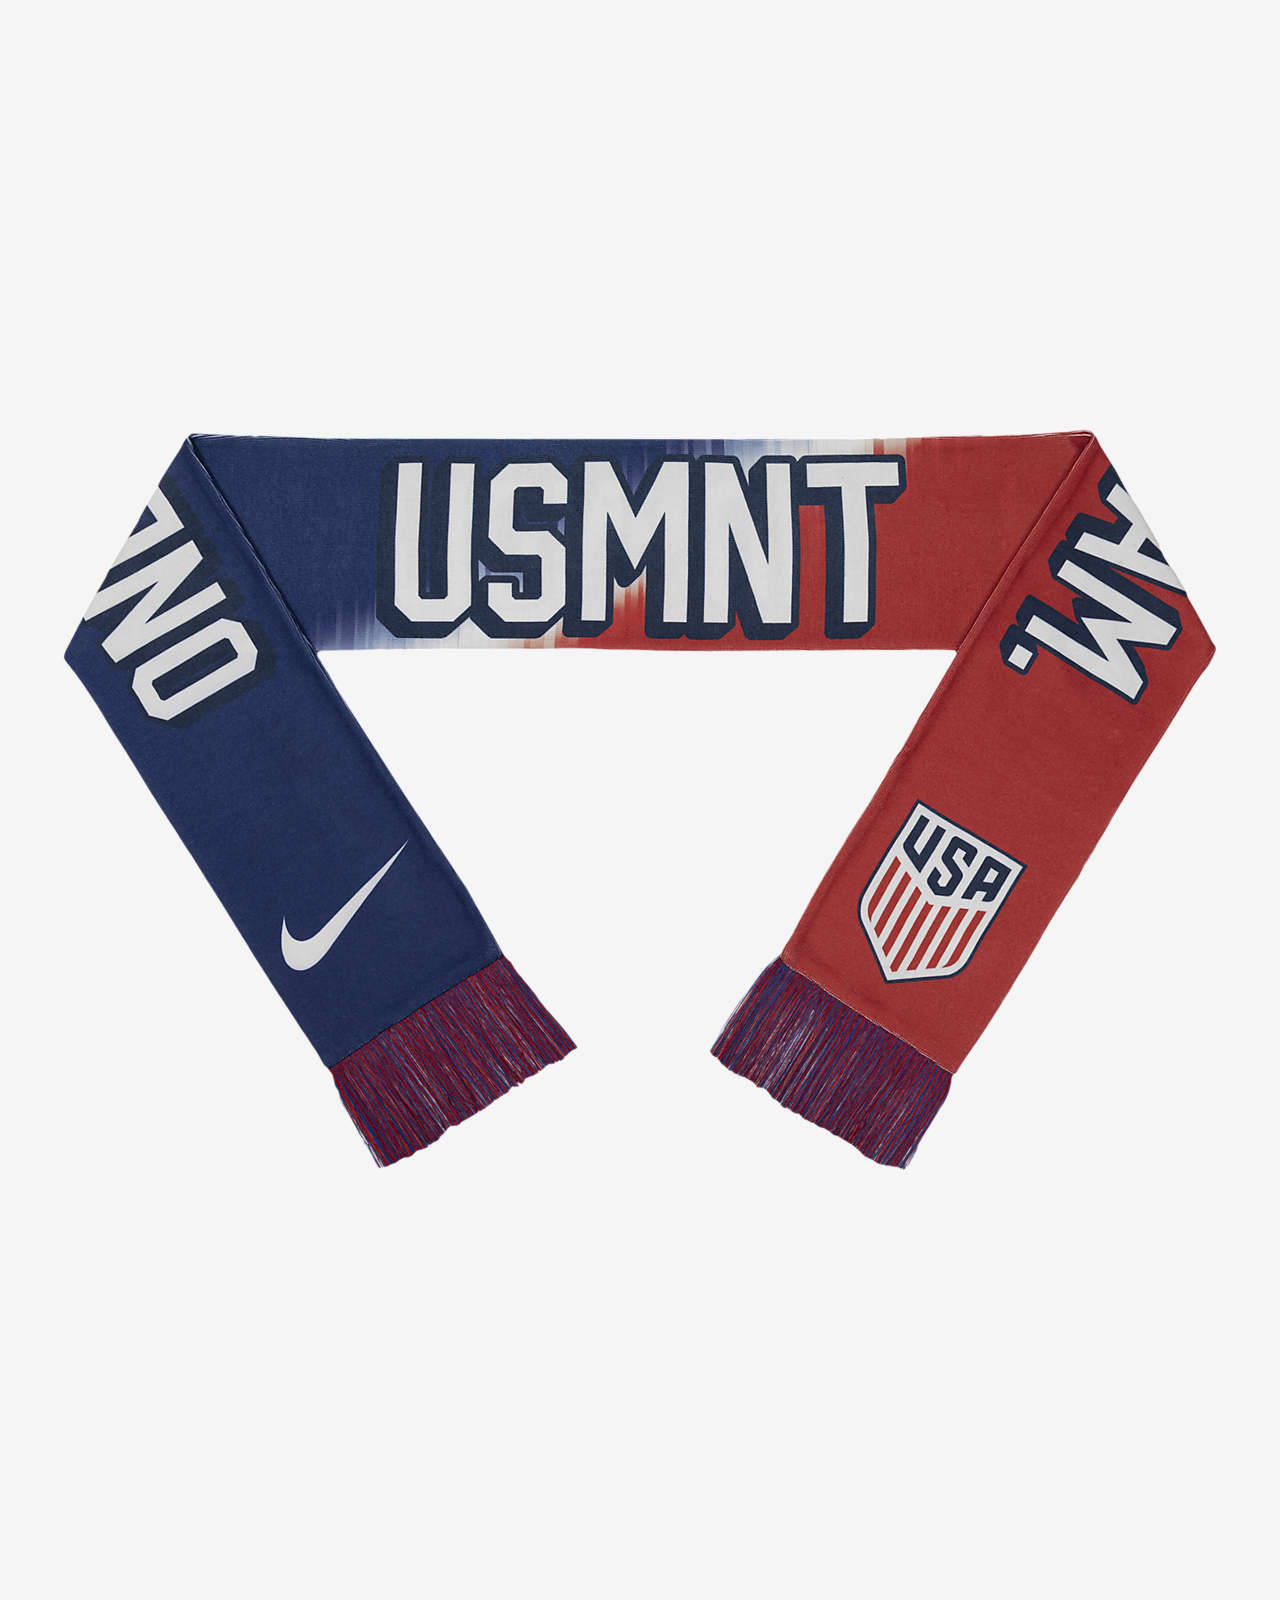 USMNT Nike Soccer Scarf